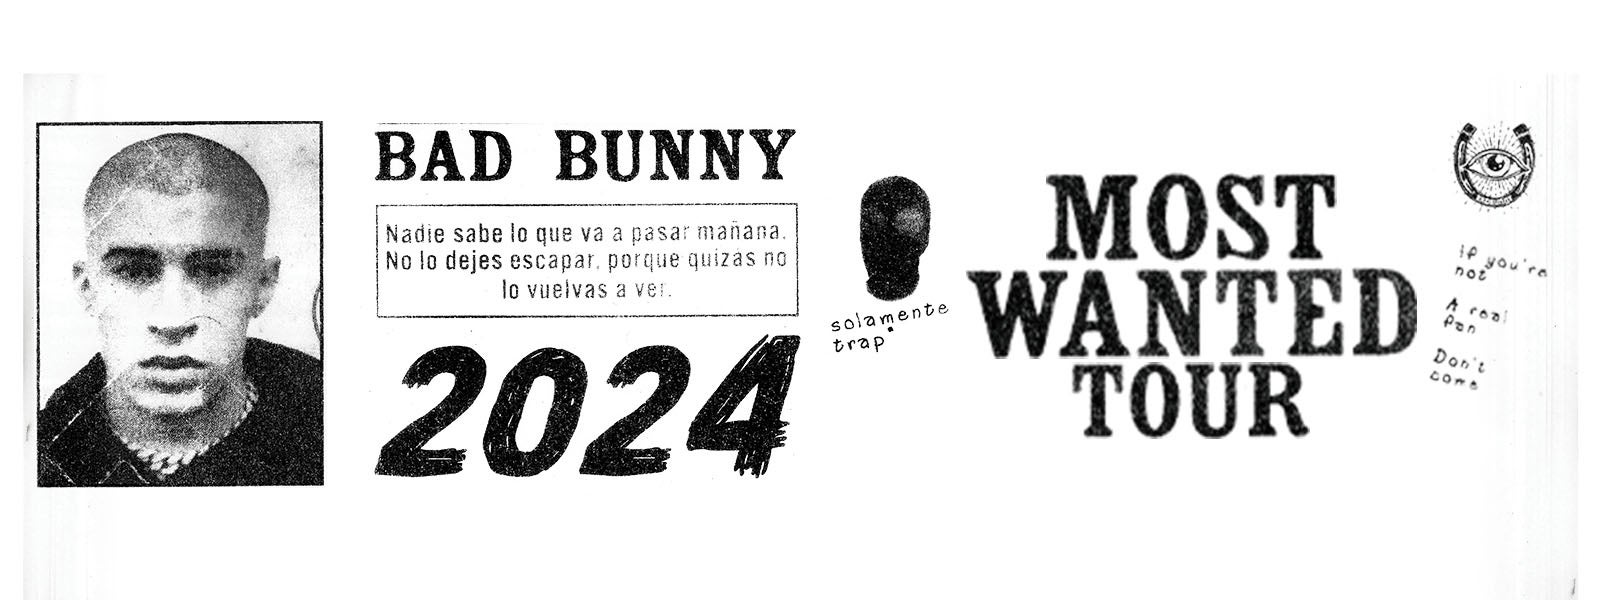 Bad Bunny - Monaco (Letra/Lyrics)  nadie sabe lo que va a pasar mañana 